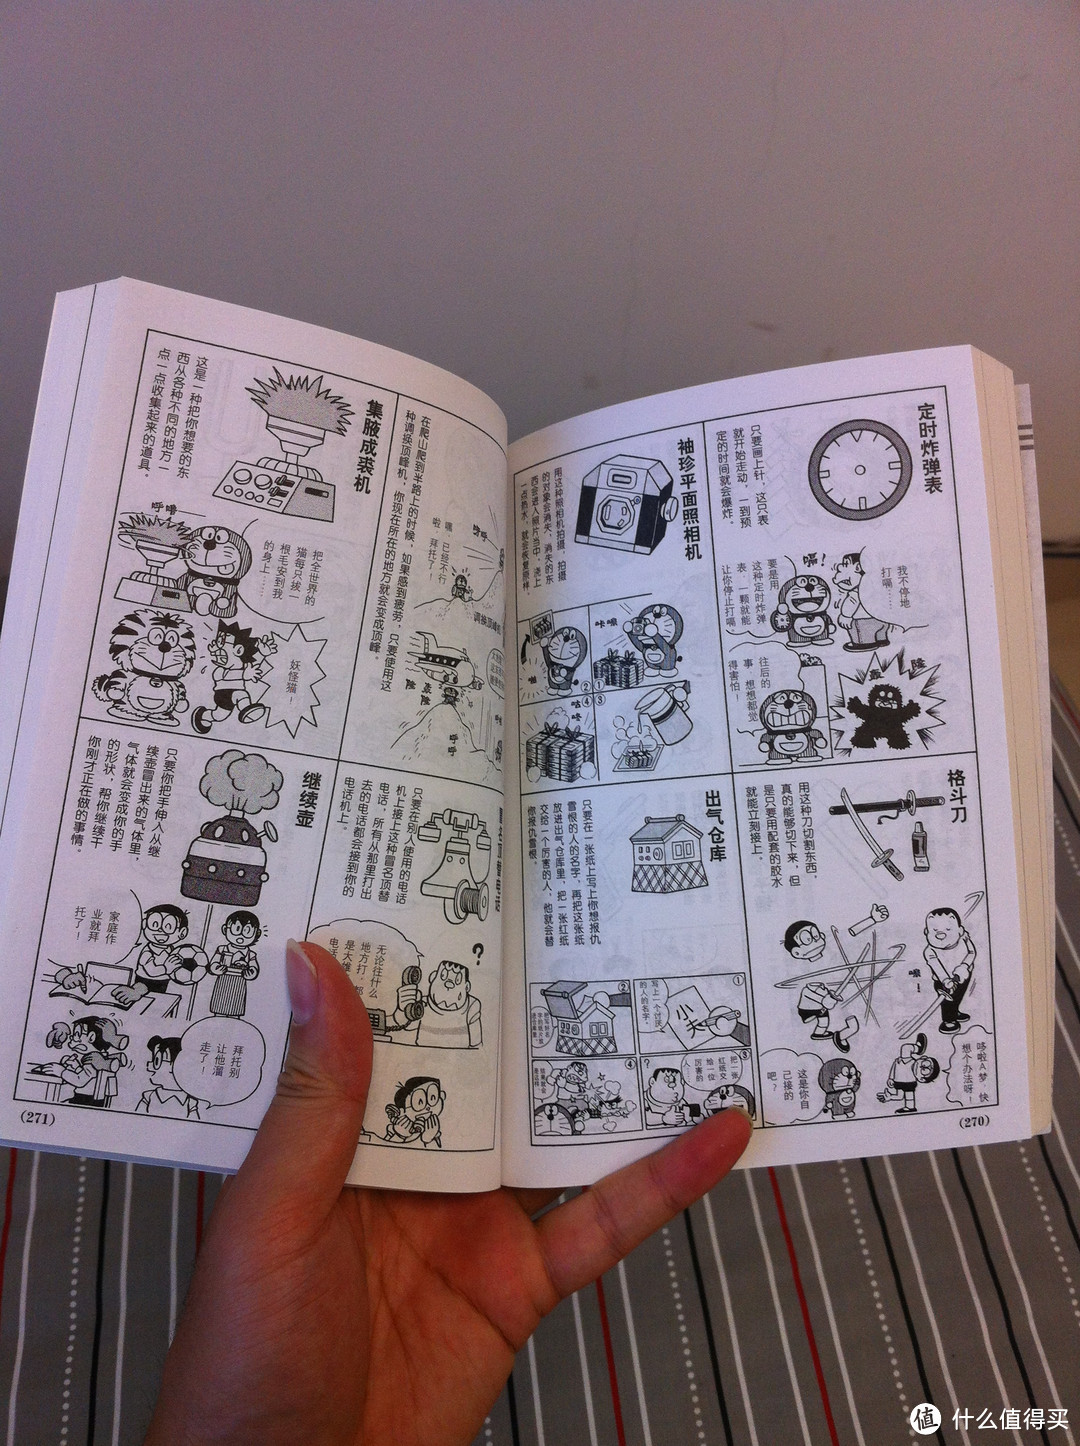 《哆啦A梦 珍藏版》 漫画书，说说关于藤子不二雄和哆啦A梦的那些事儿